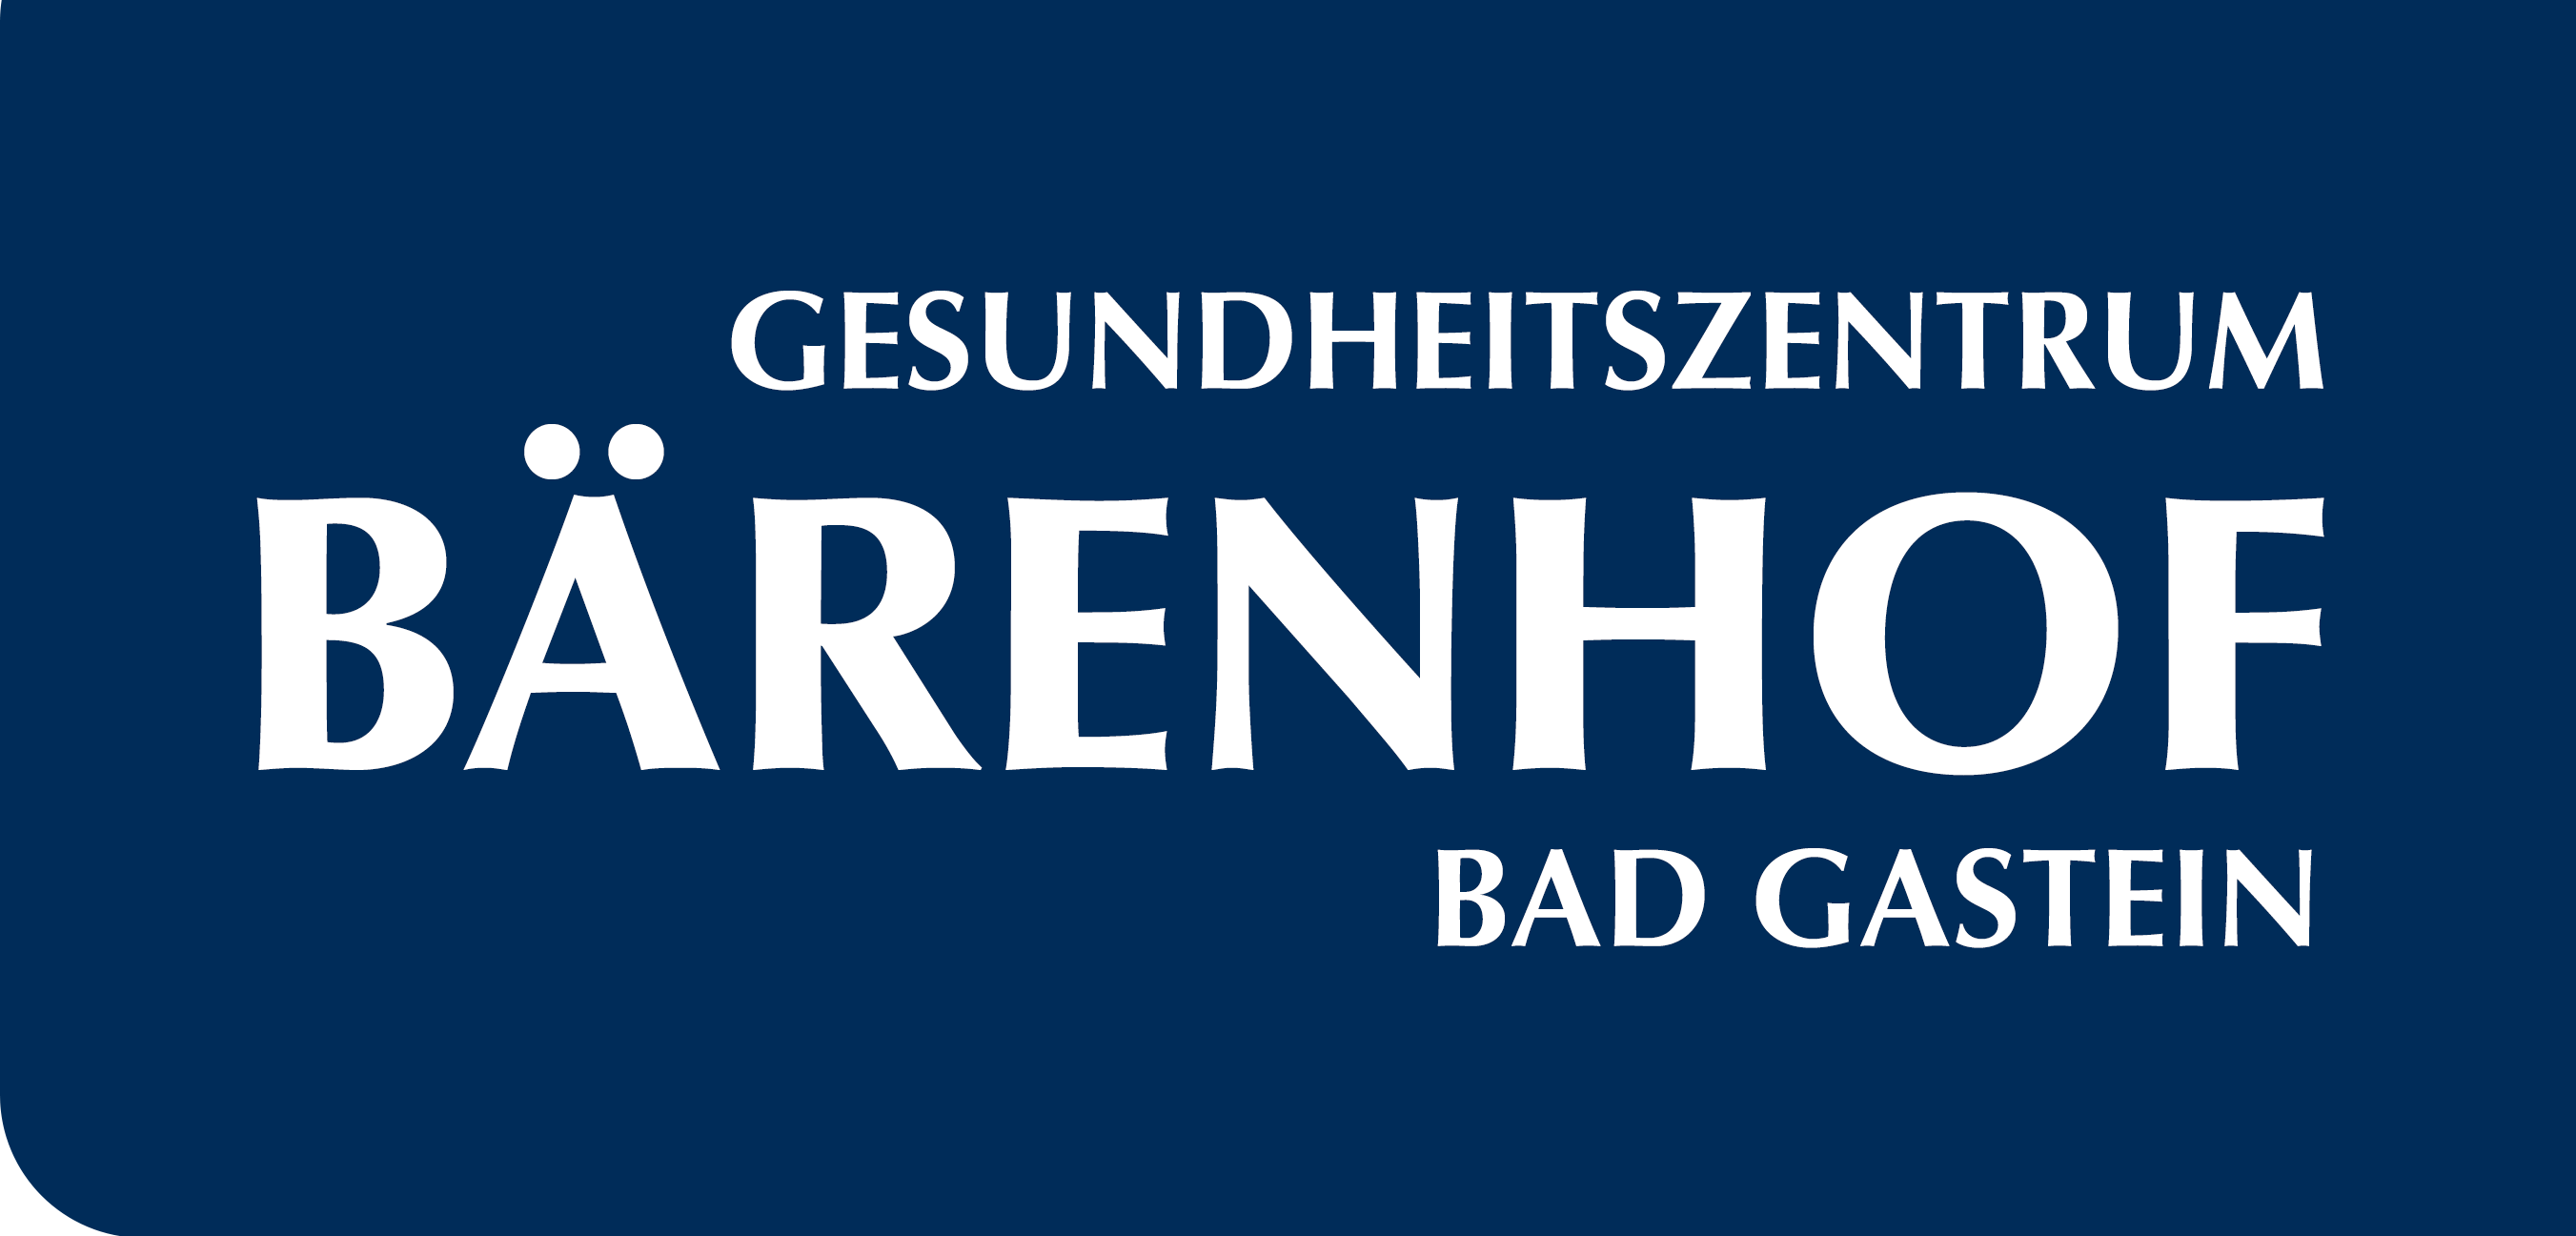 Gesundheitszentrum Bärenhof Bad Gastein